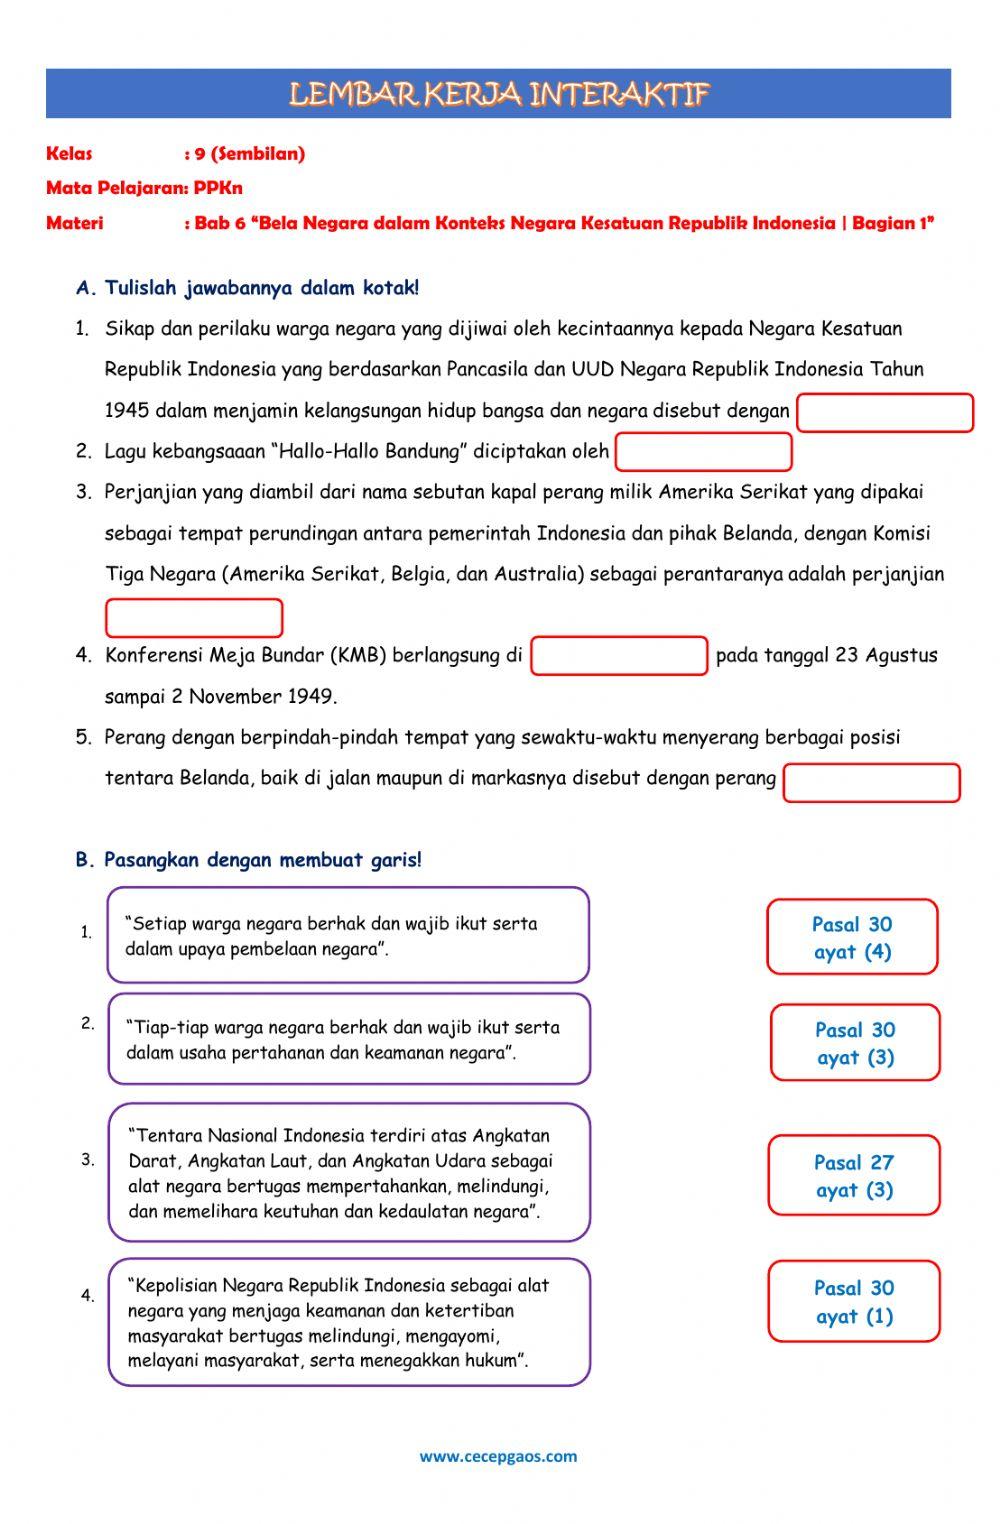 Lembar Kerja Siswa Interaktif PPKn Kelas 9 Bab 6 -Bela Negara dalam Konteks Negara Kesatuan Republik Indonesia (Bagian 2)-